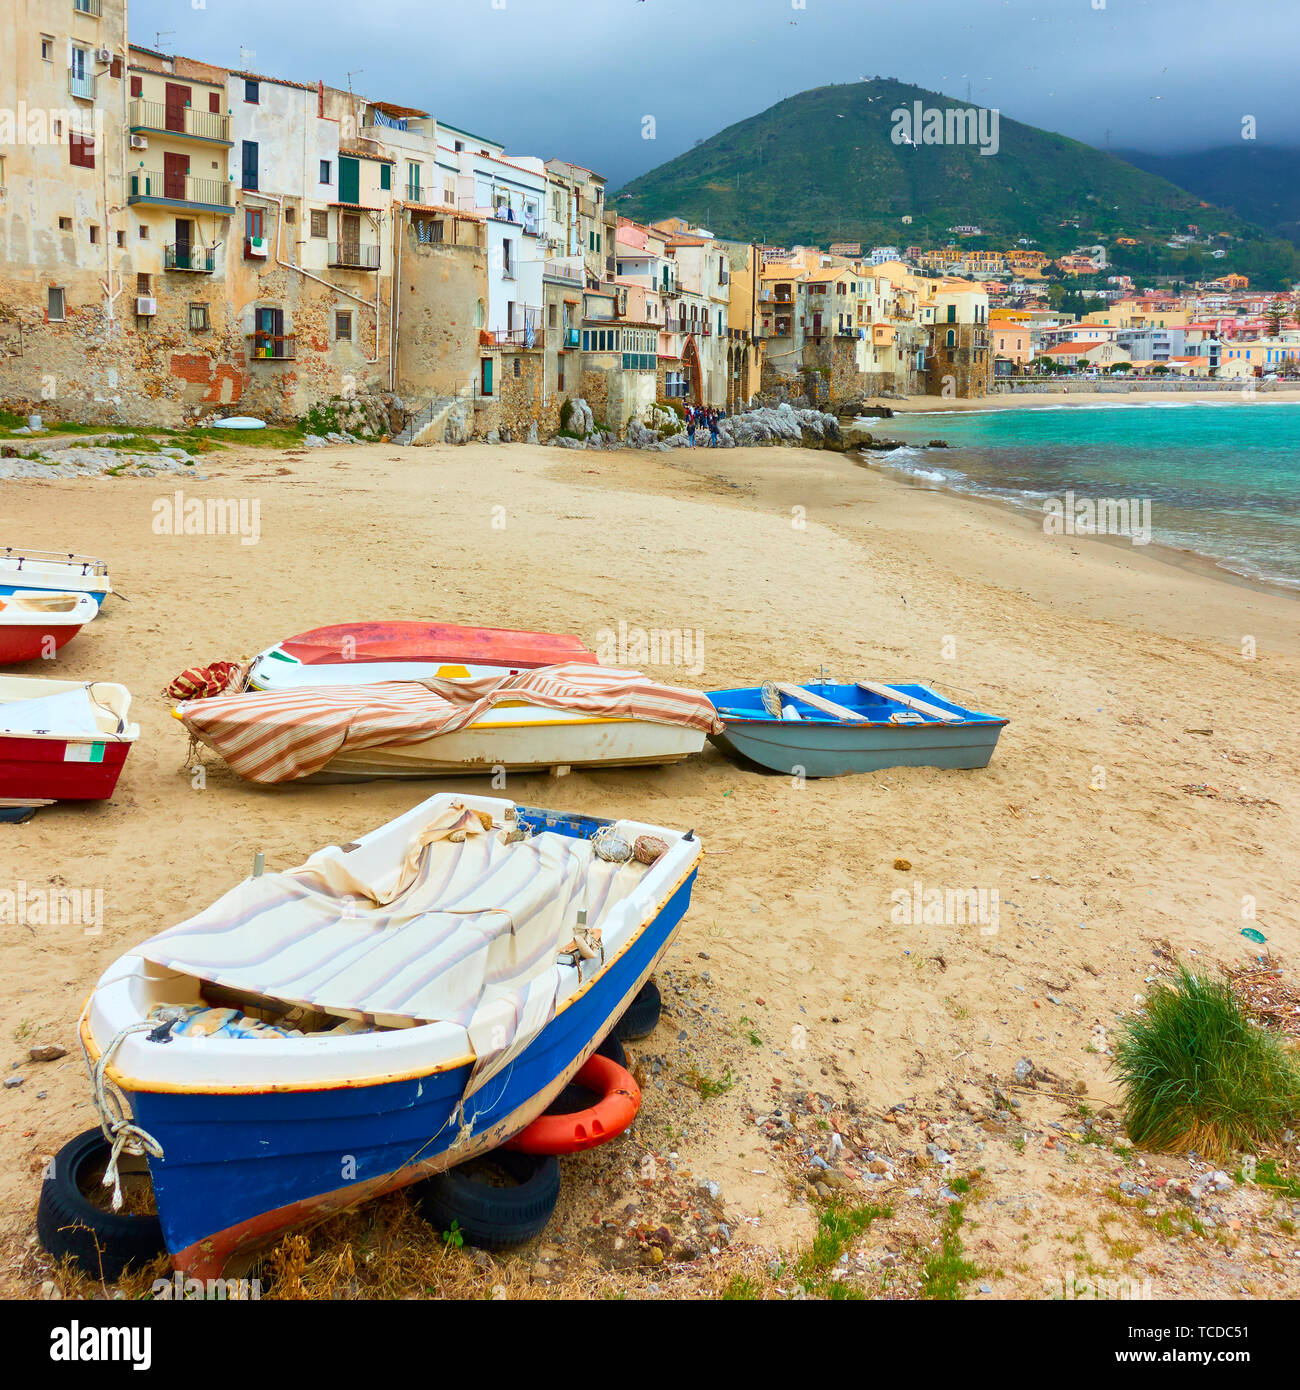 Bateaux sur la plage de sable de Cefalù, Sicile, Italie Banque D'Images